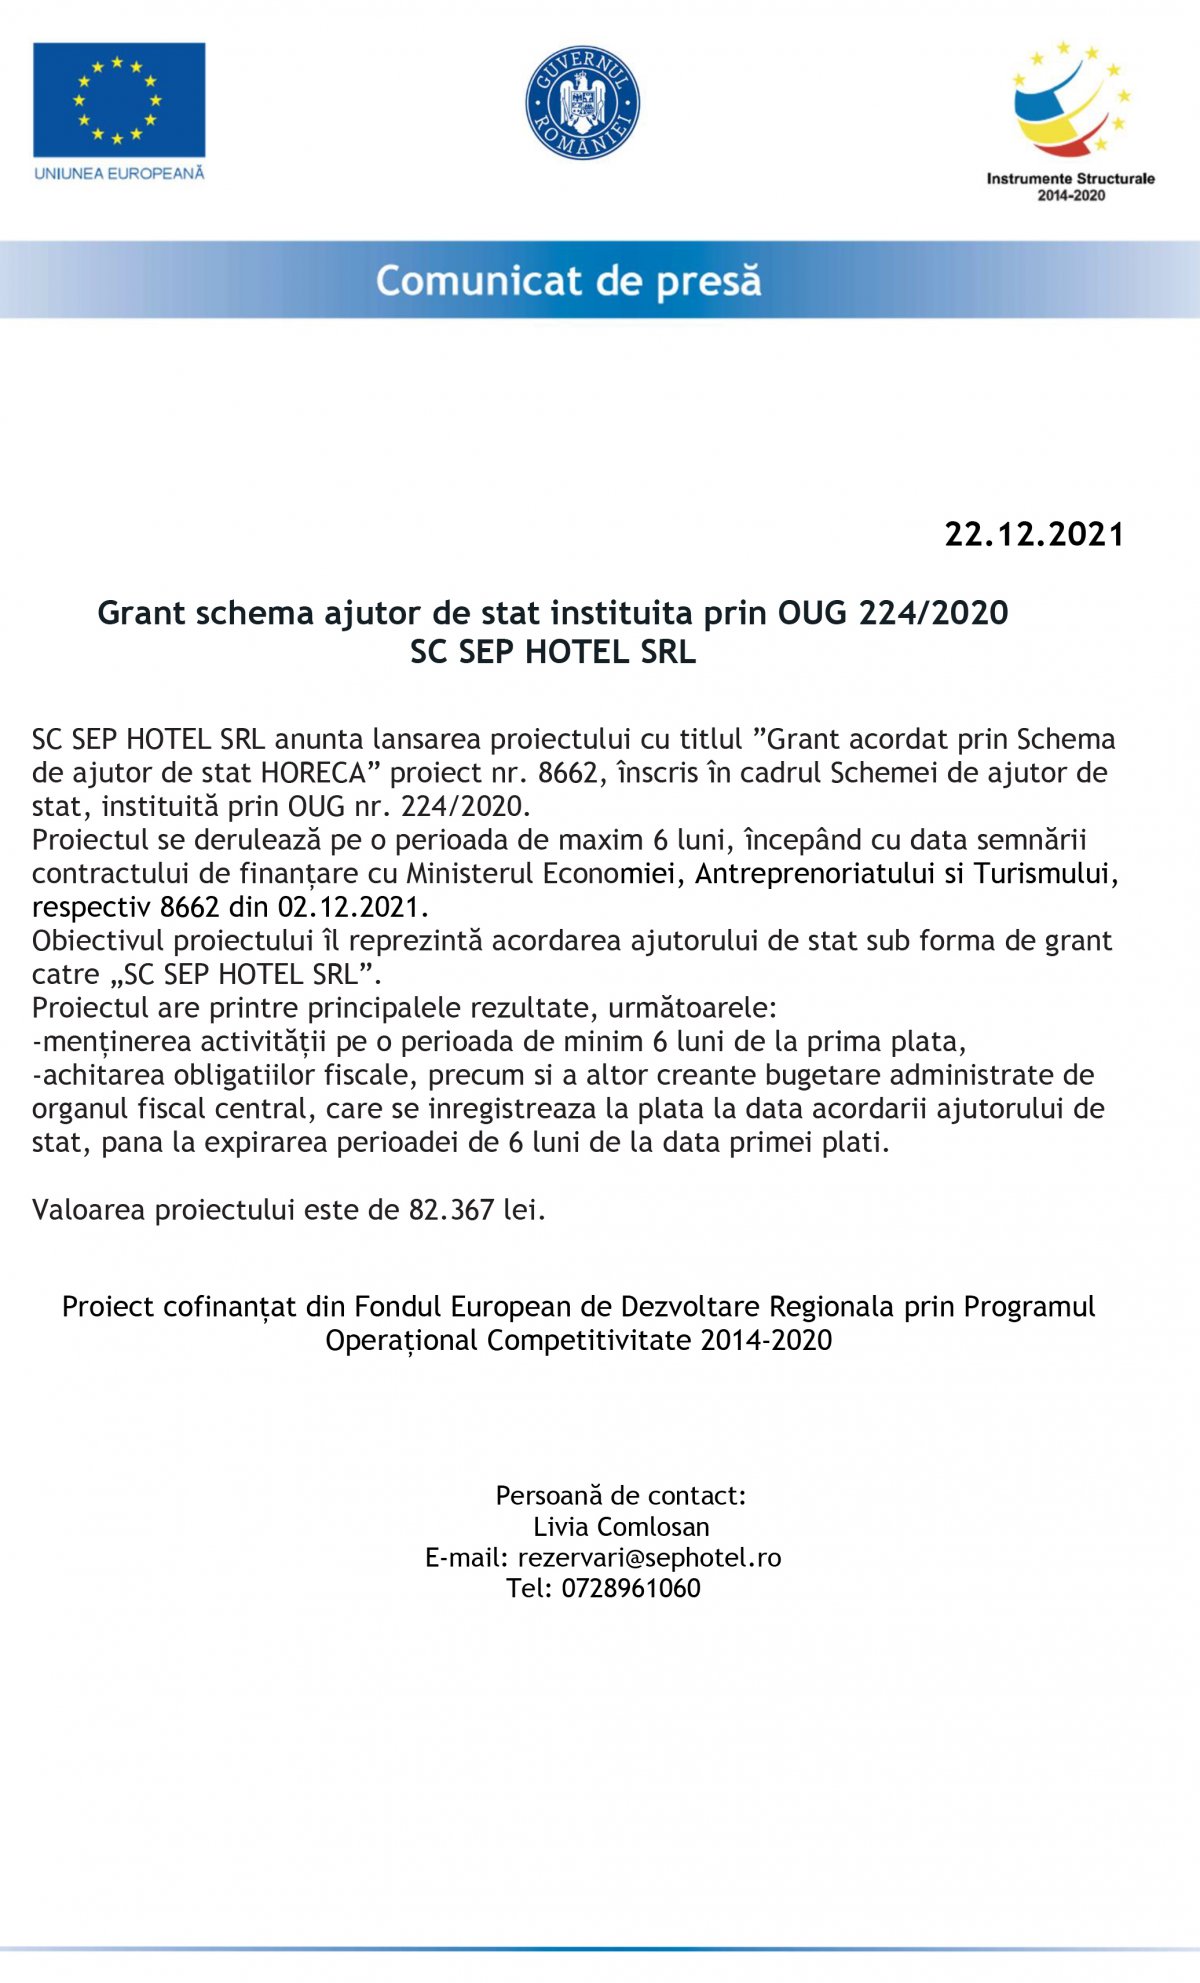 Grant schema ajutor de stat instituita prin OUG 224/2020 SC SEP HOTEL SRL